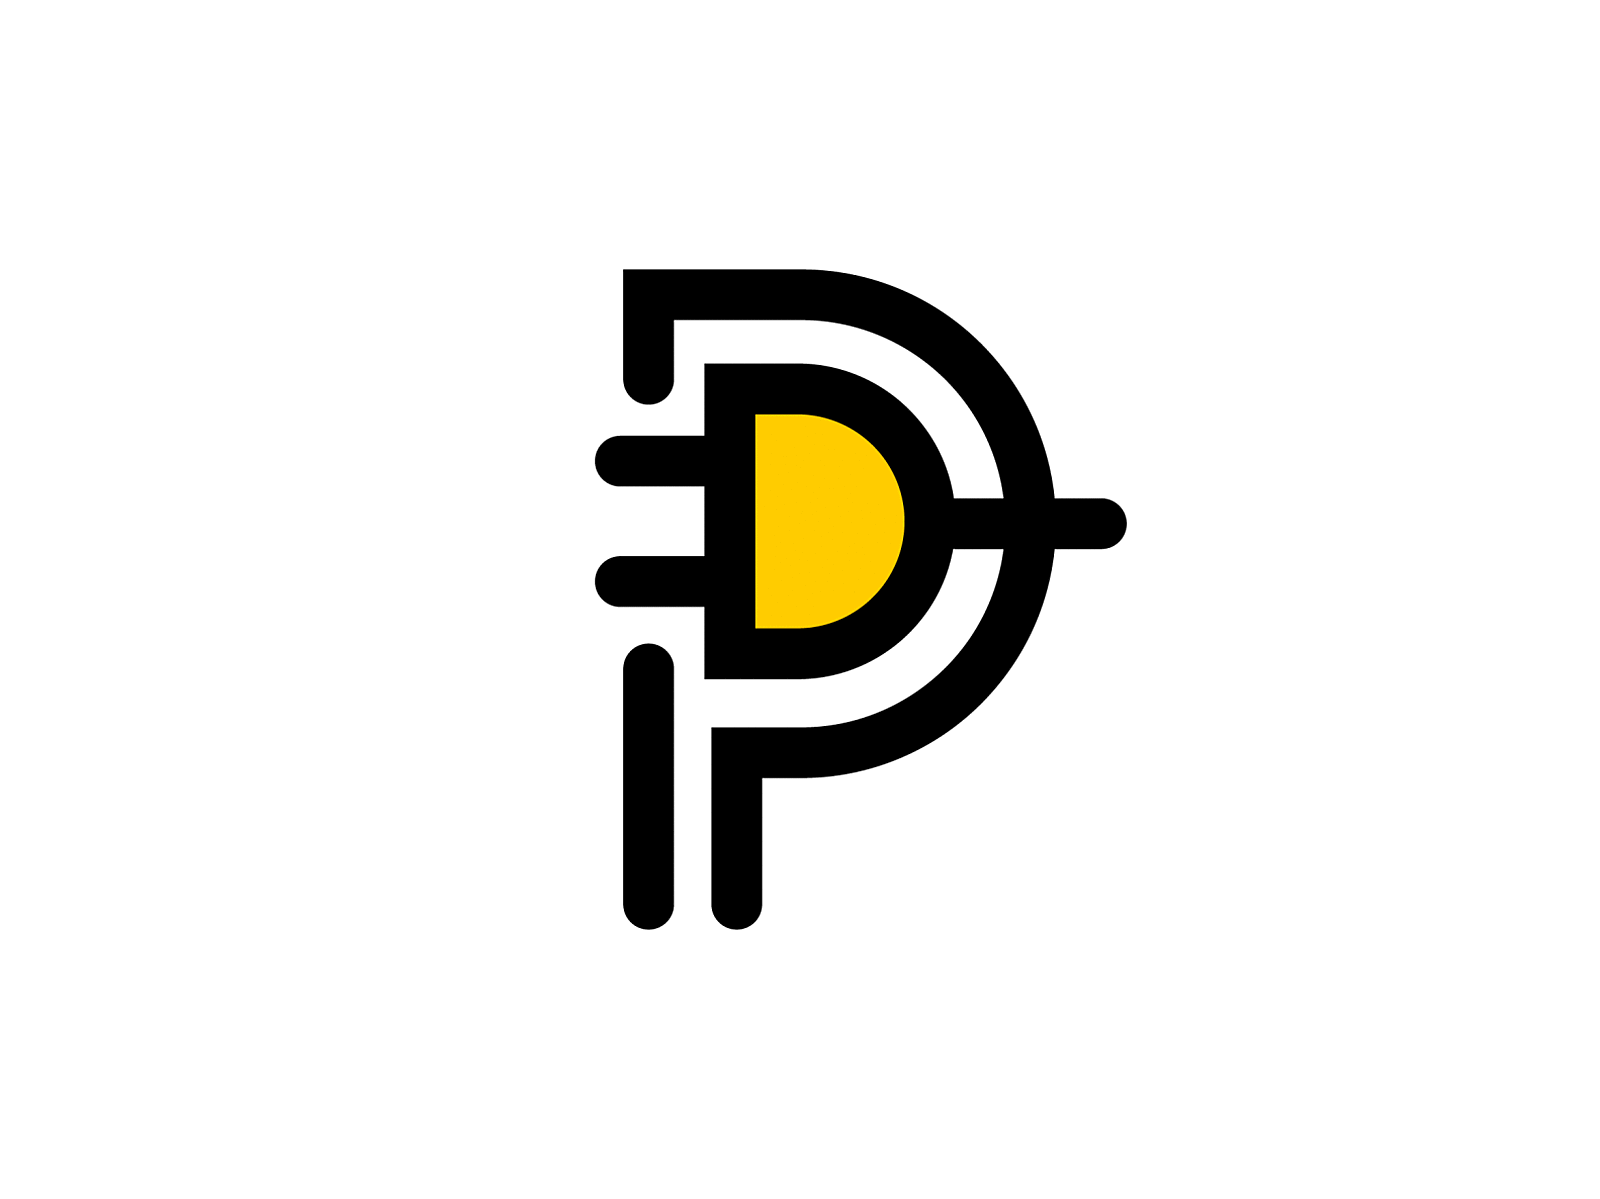 Plug + P. Logo design concept